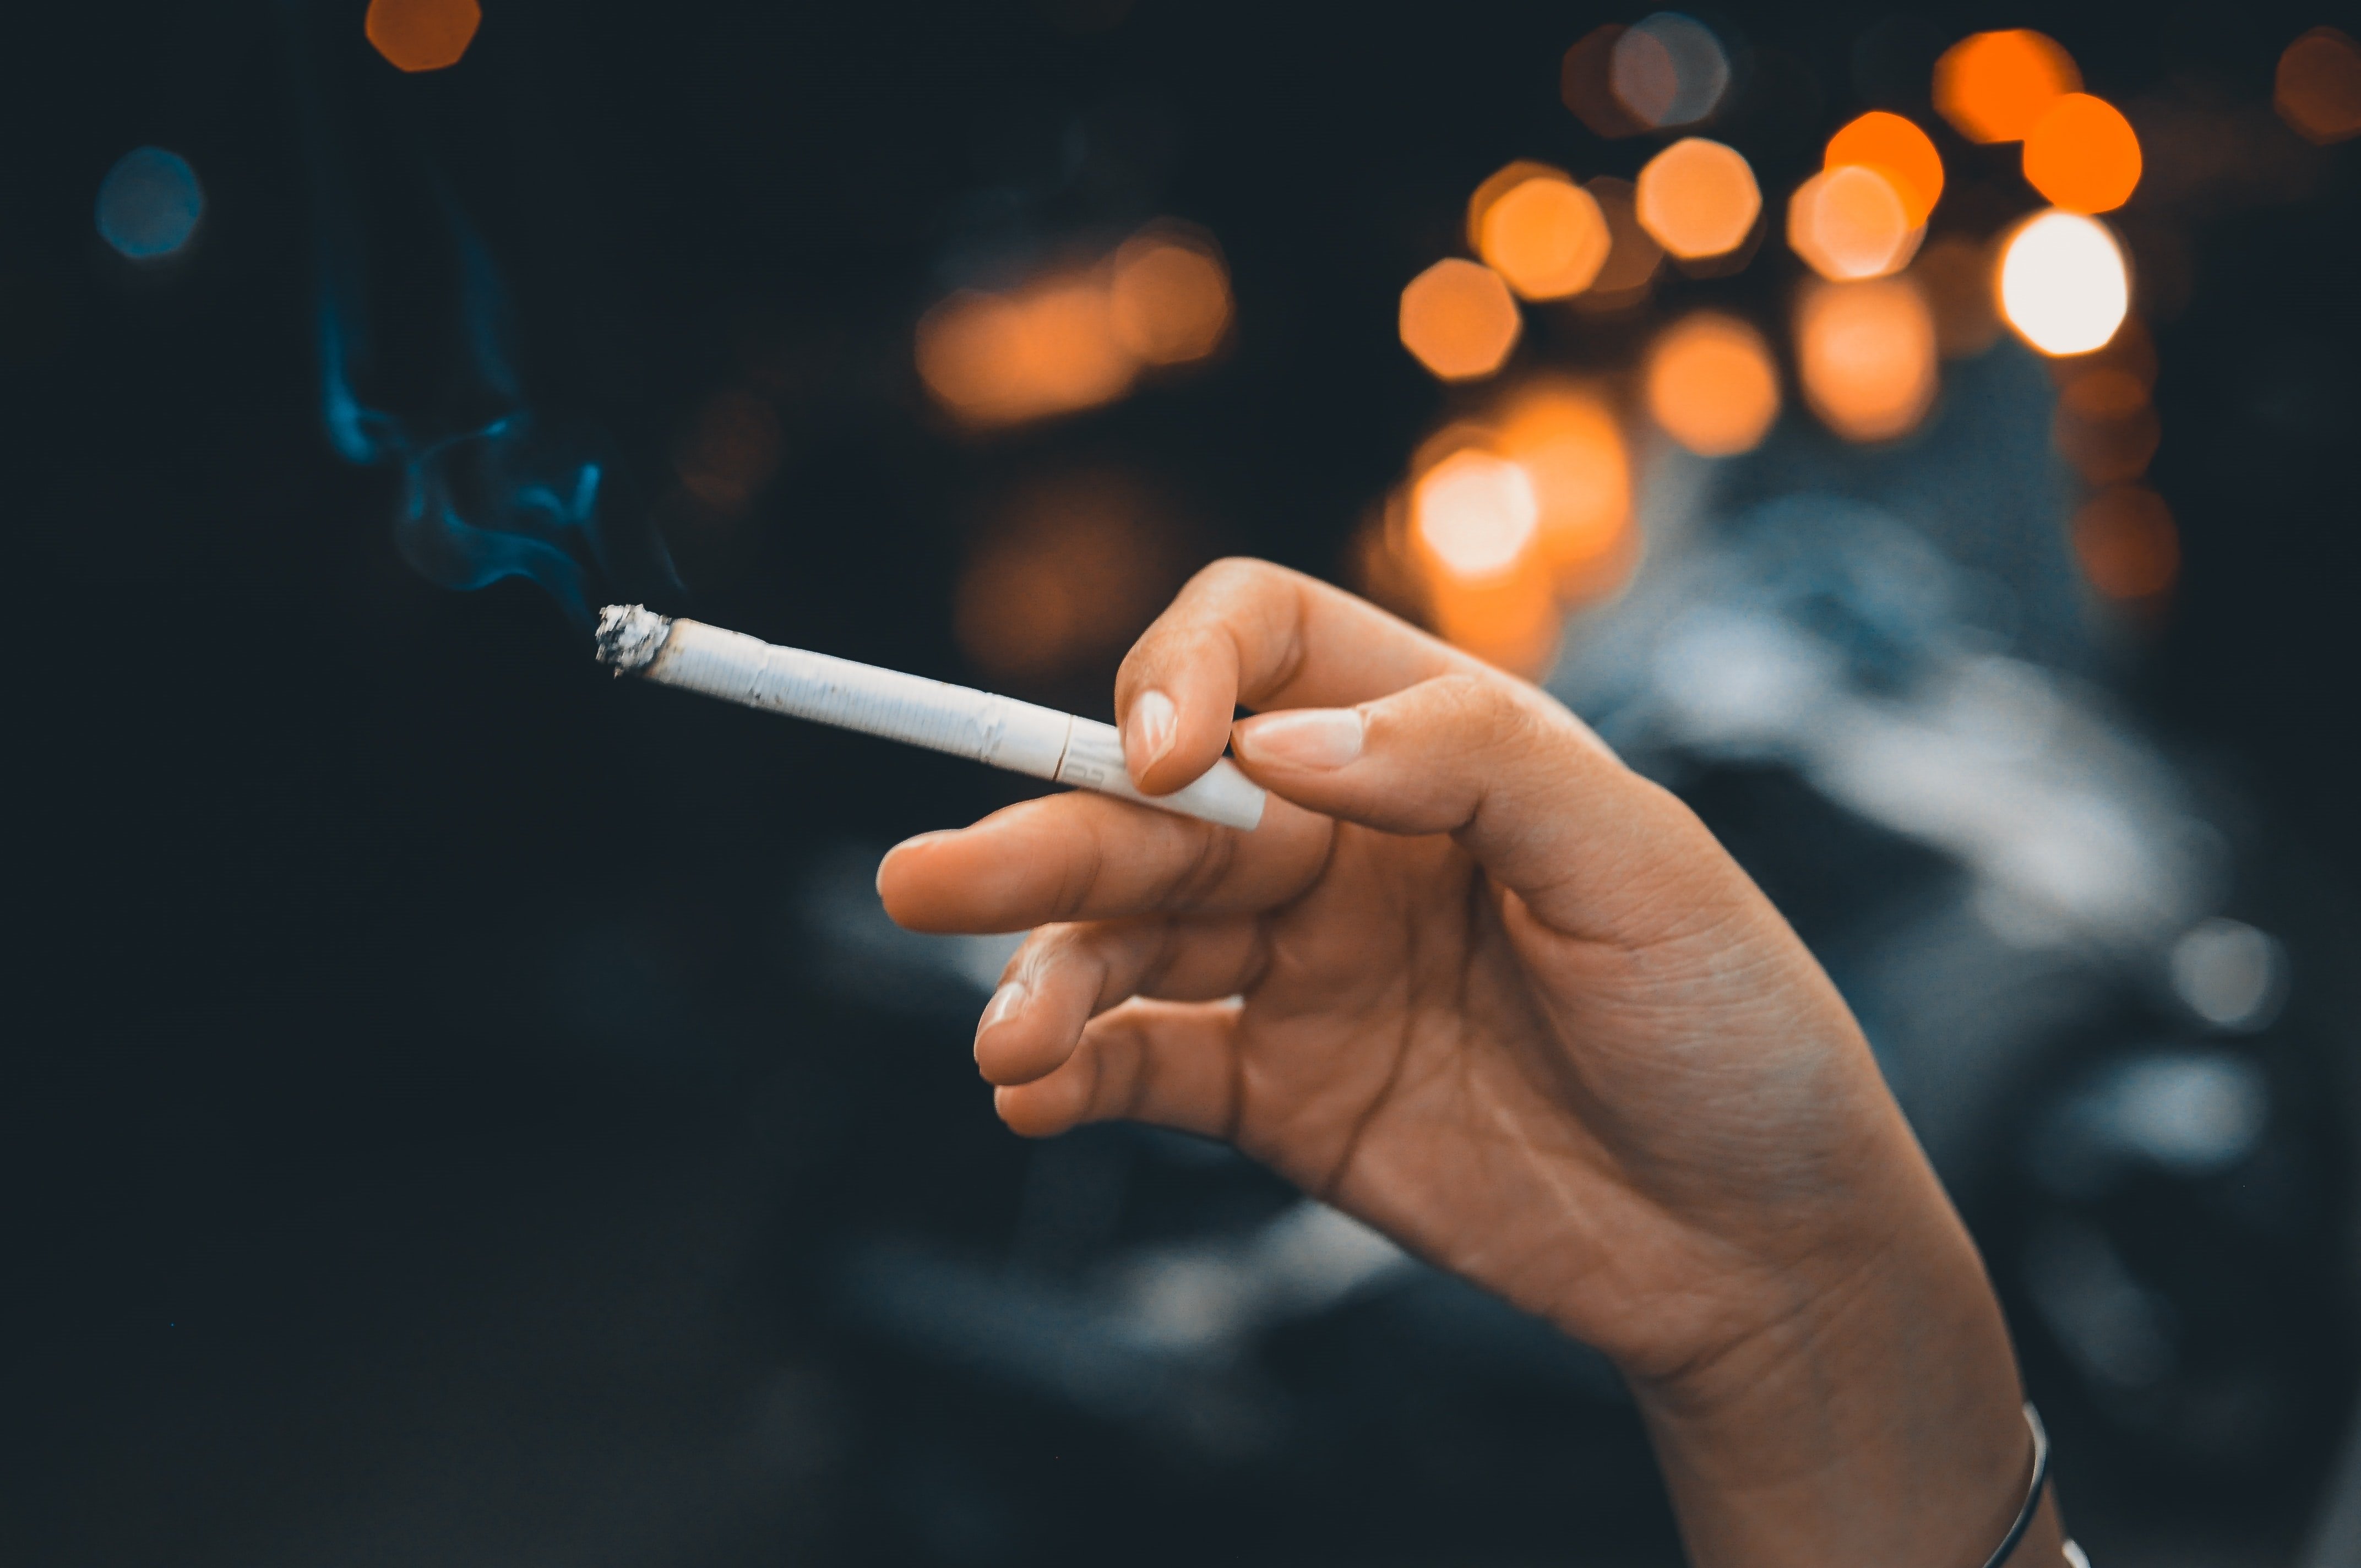 Sanidad planea prohibir fumar en las terrazas y accesos a edificios públicos